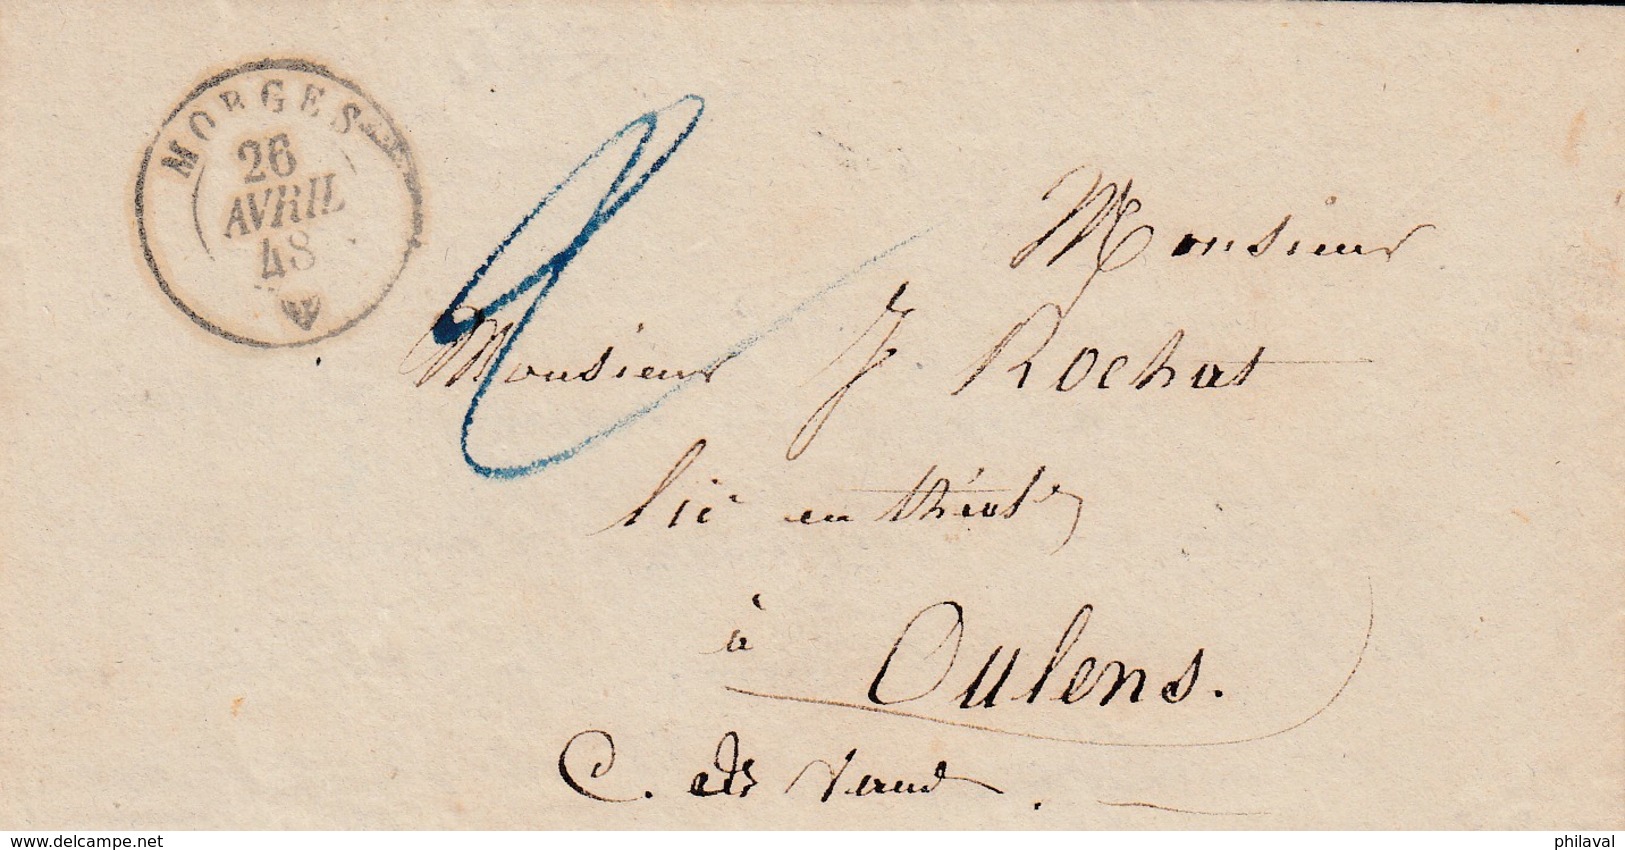 Petite Lettre 12 X 6,5 Cms. Oblitérée Morges Le 26 Avril 48, à Destination De Oulens ( Cachet D'Echallens ) - ...-1845 Prefilatelia